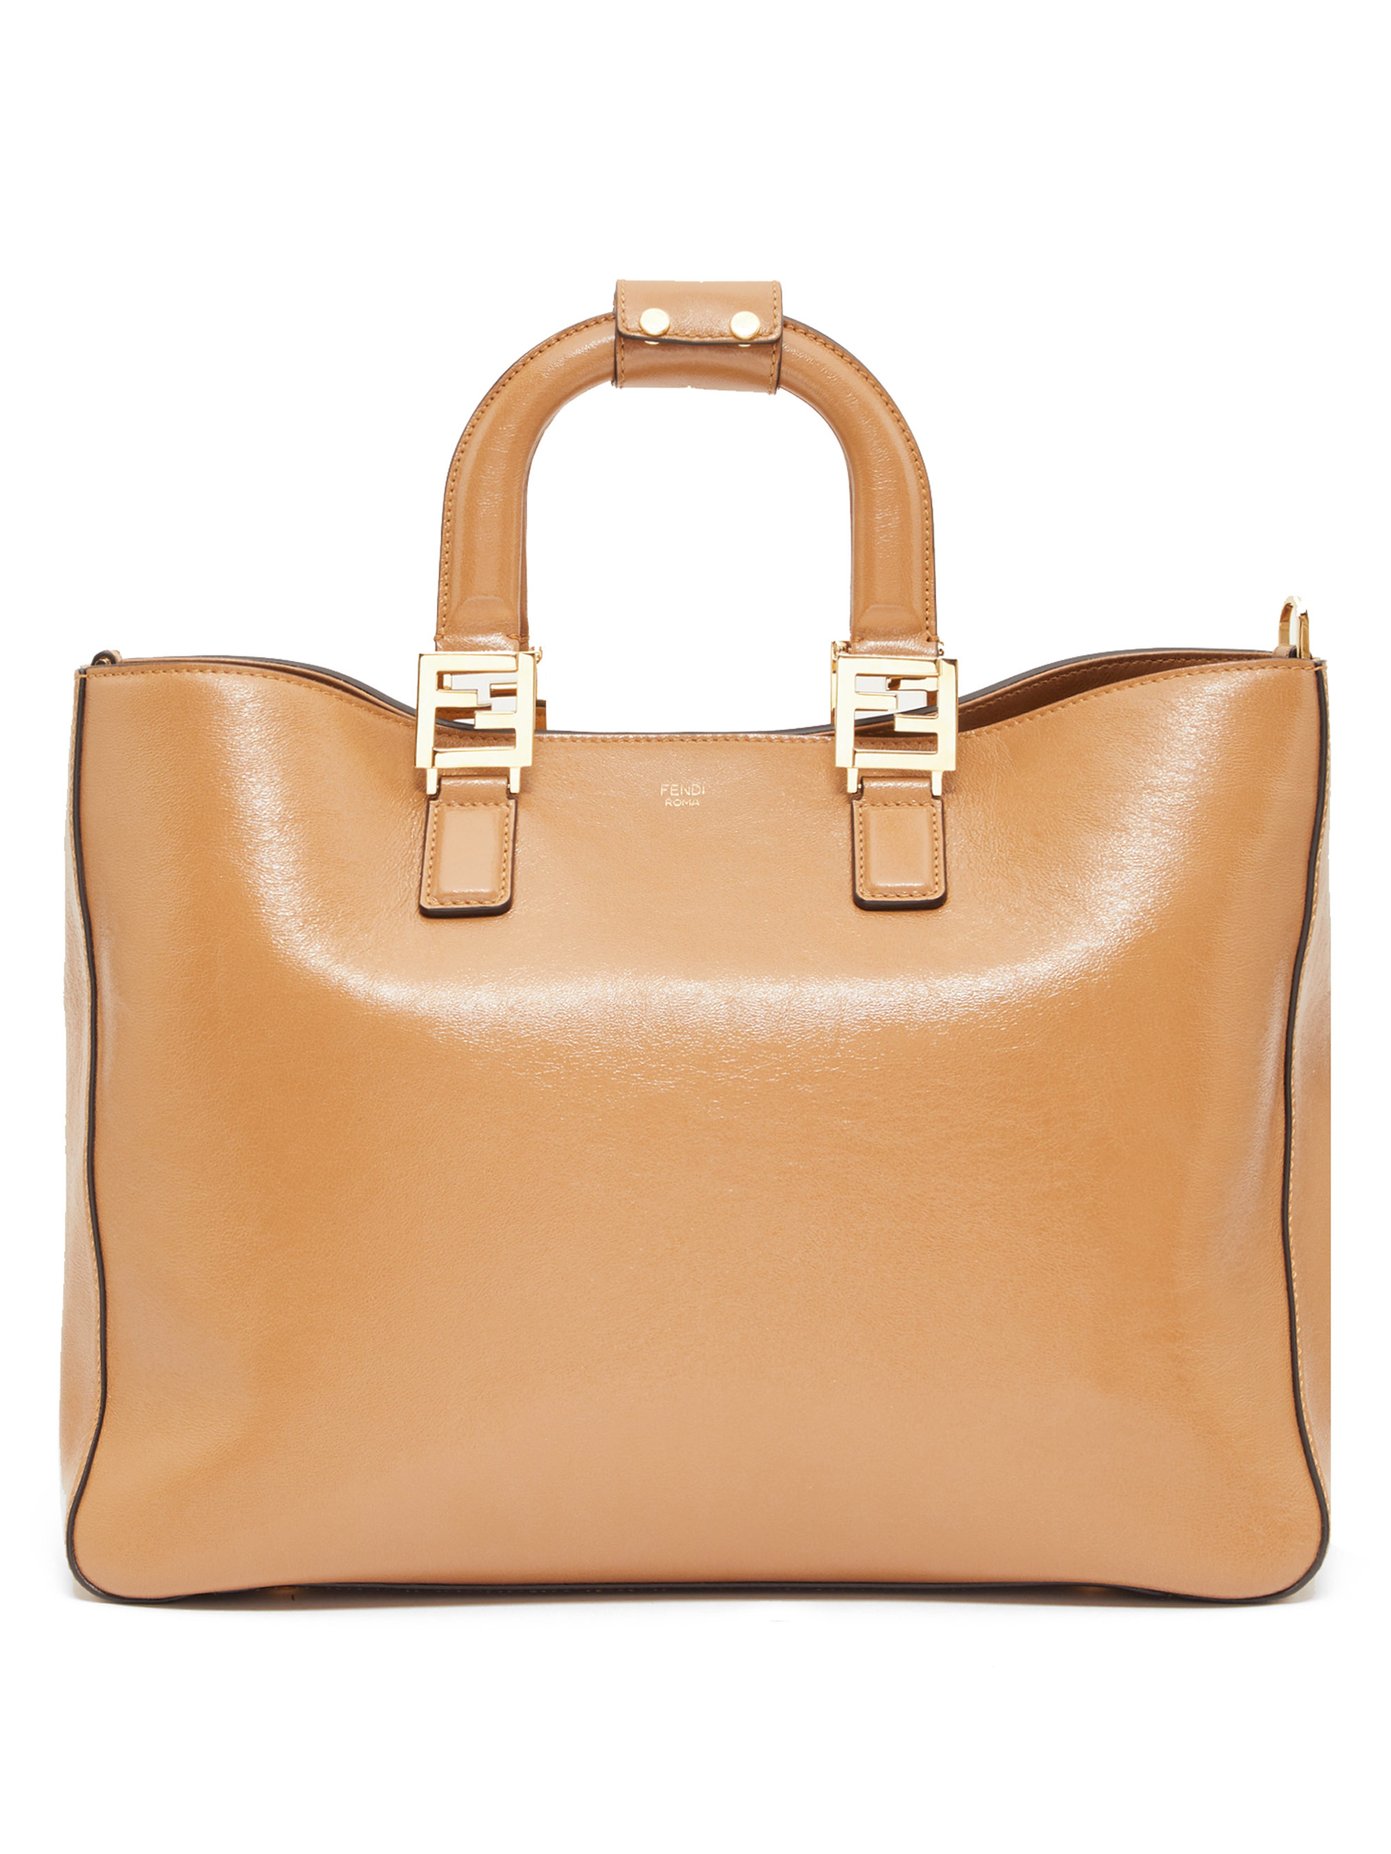 FF leather tote bag | Fendi 